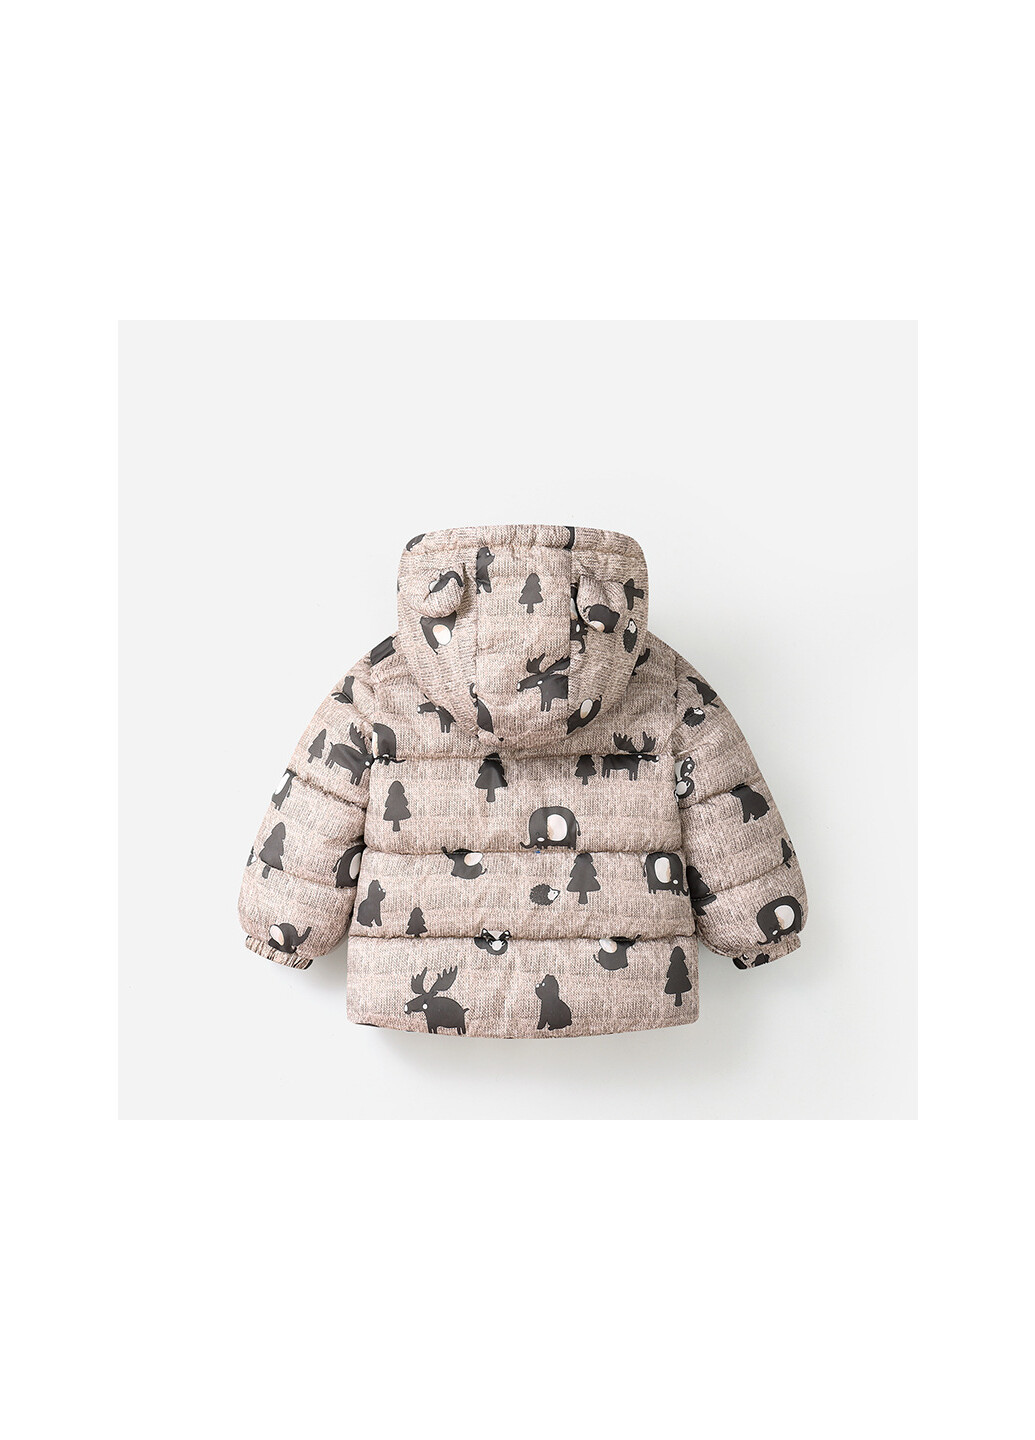 Коричневая зимняя куртка на синтепоне детская с подкладкой из флиса, капюшоном и изображением животных коричневая forest dwellers Berni kids 59347